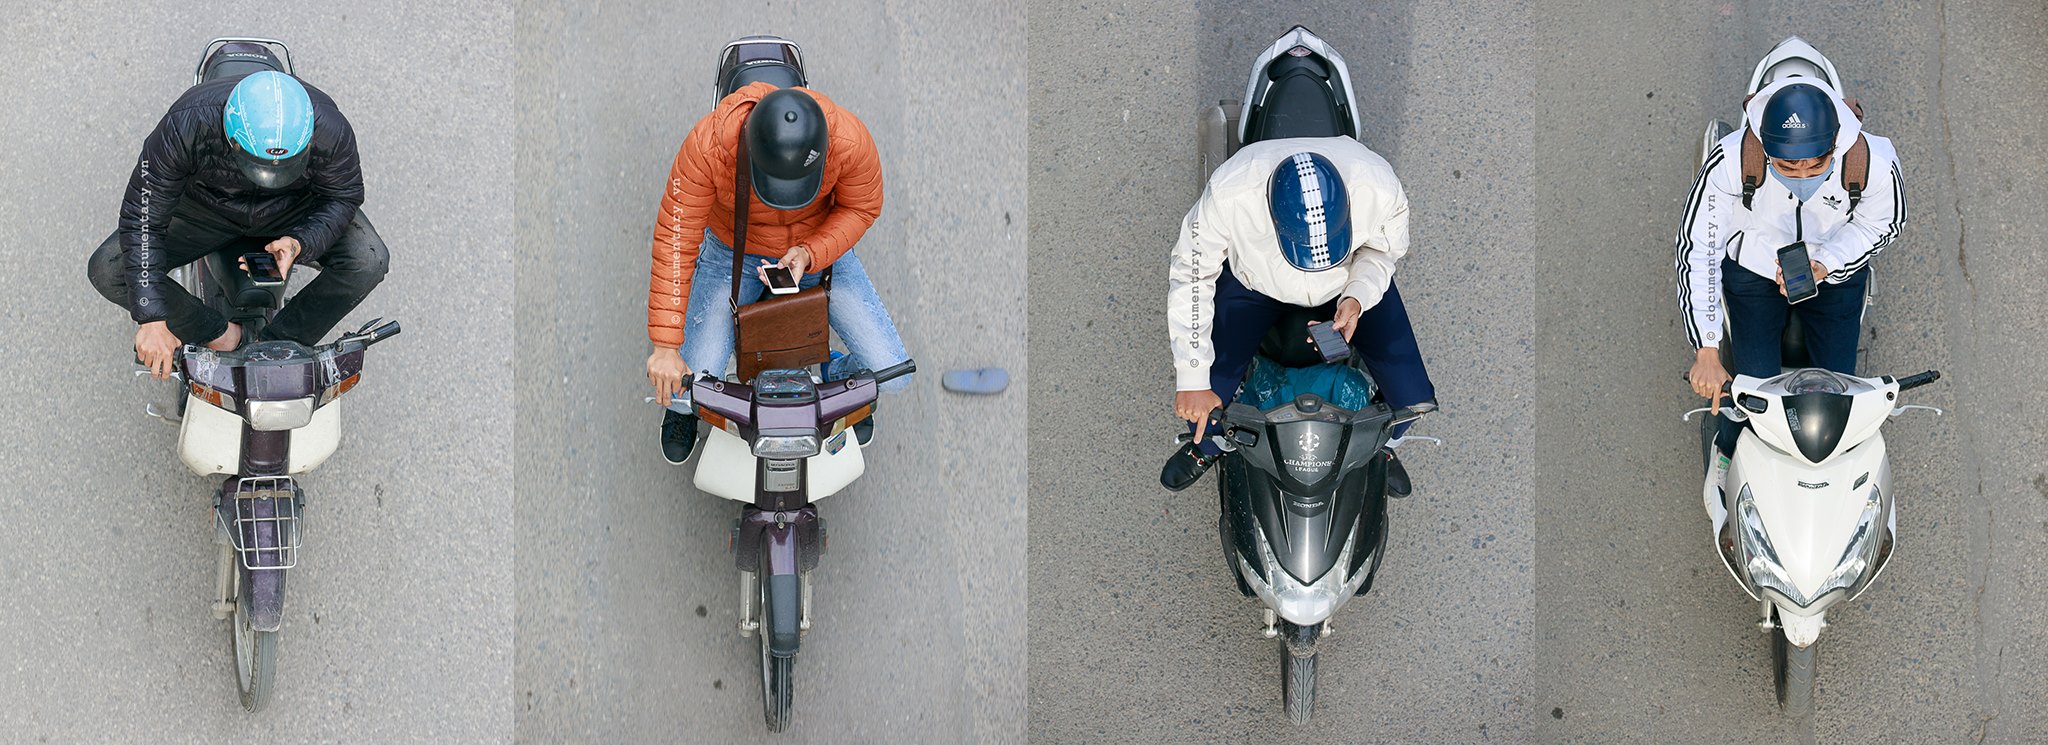 Góc nhìn thú vị về giao thông Hà Nội qua loạt ảnh “Những bộ tứ siêu đẳng”